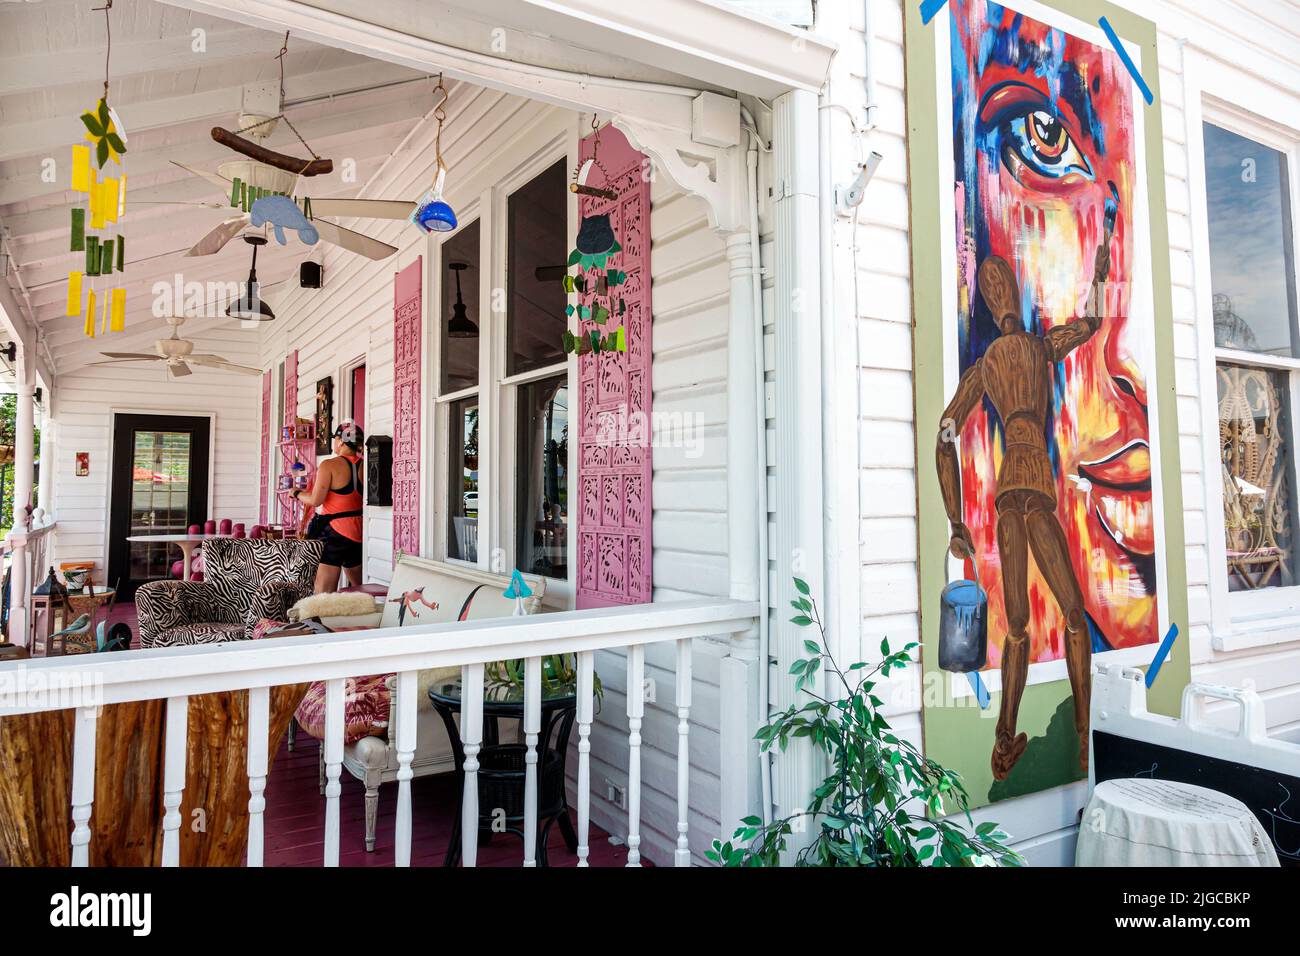 Punta Gorda Florida, Distrito Histórico cafetería sin filtrar, fuera porche de entrada frontal exterior casa reutilizada convertida en negocio Foto de stock